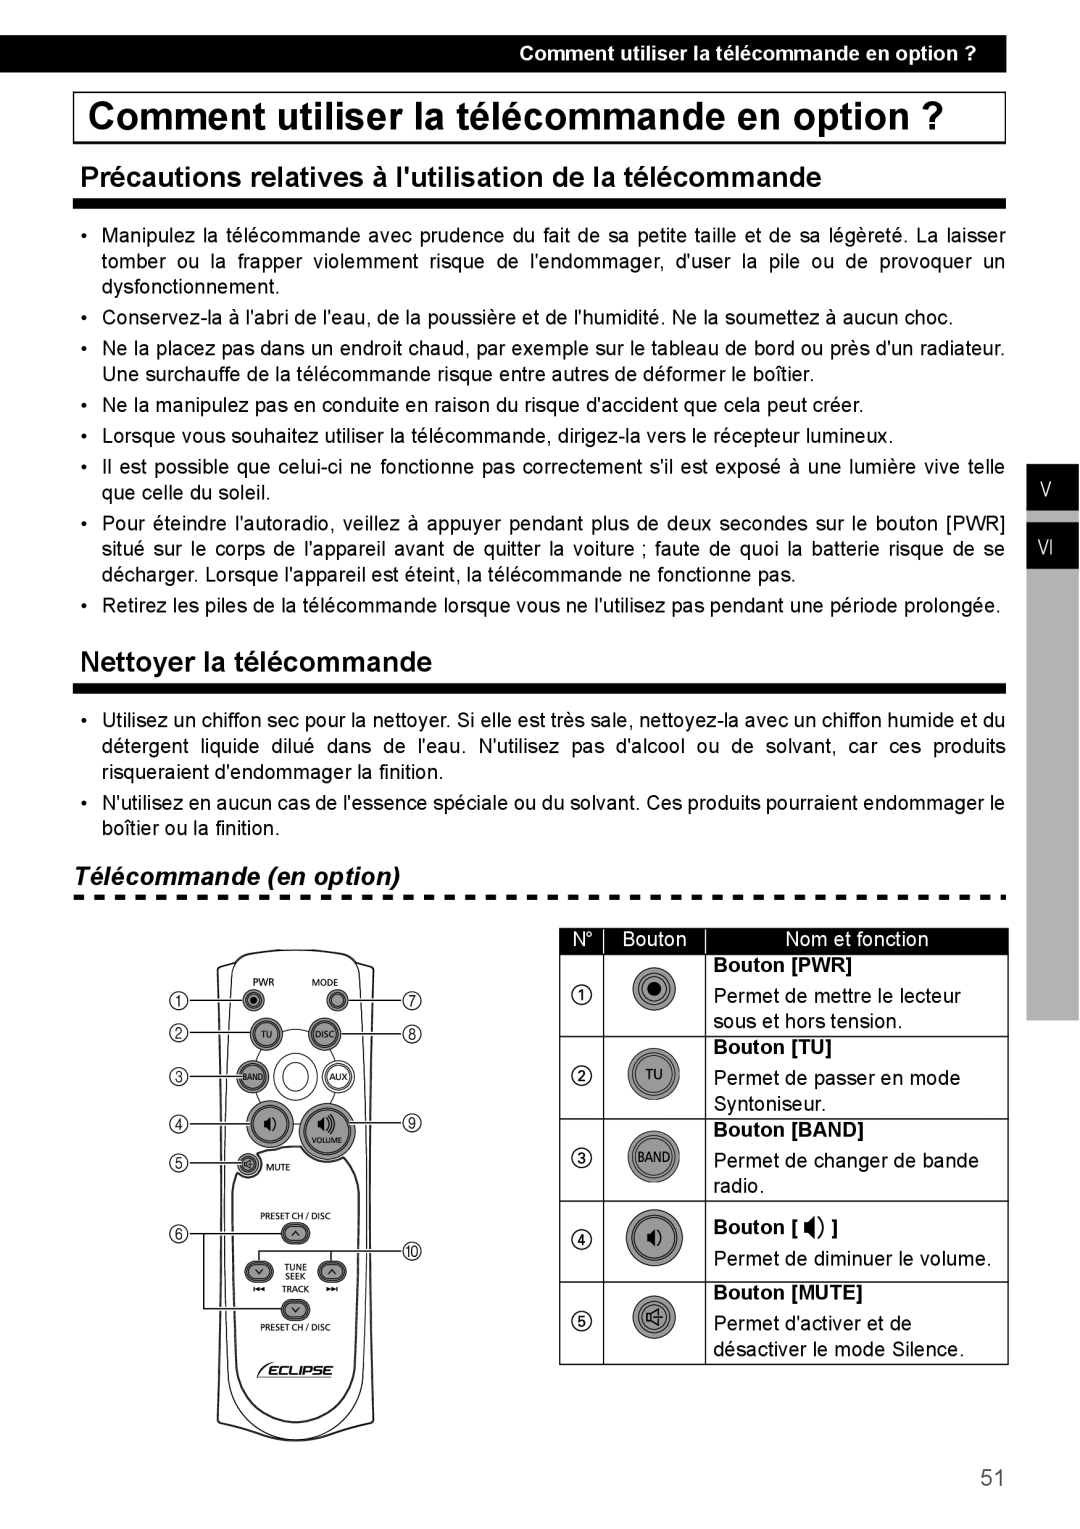 Eclipse - Fujitsu Ten CD1000 manual Comment utiliser la télécommande en option ?, Nettoyer la télécommande, N Bouton 